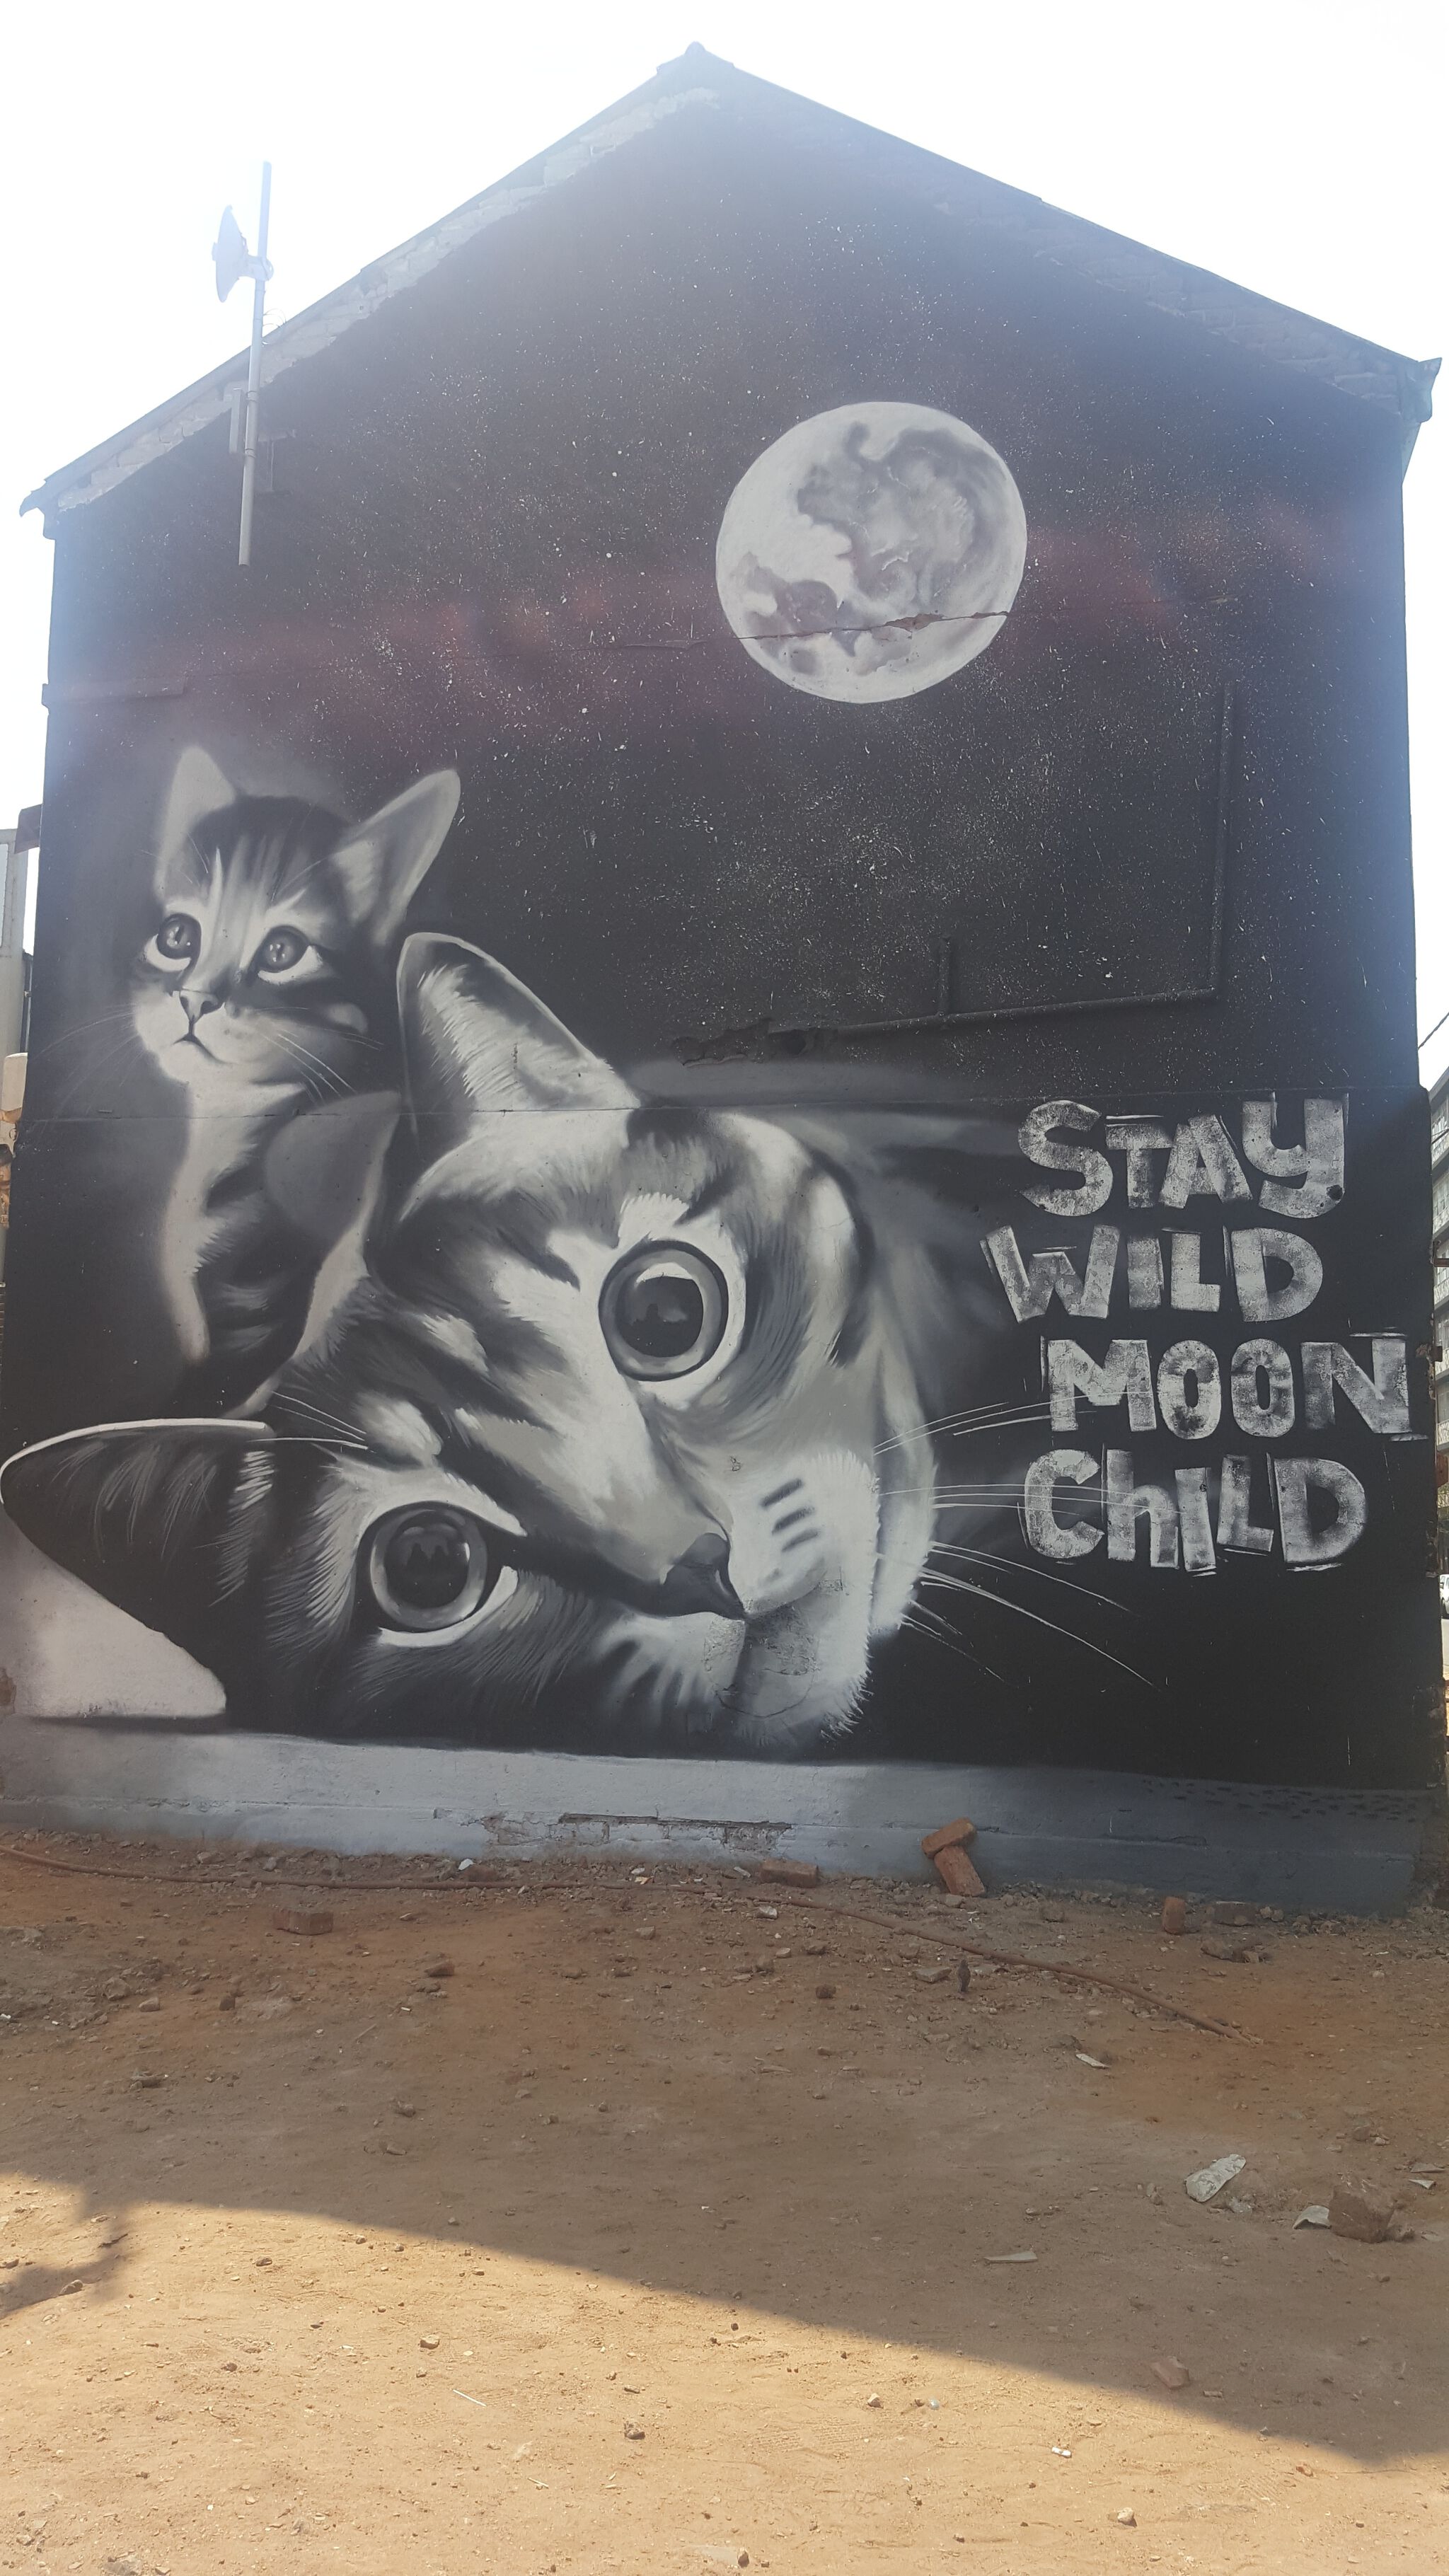 Unknown&mdash;Stay Wild Moon Child